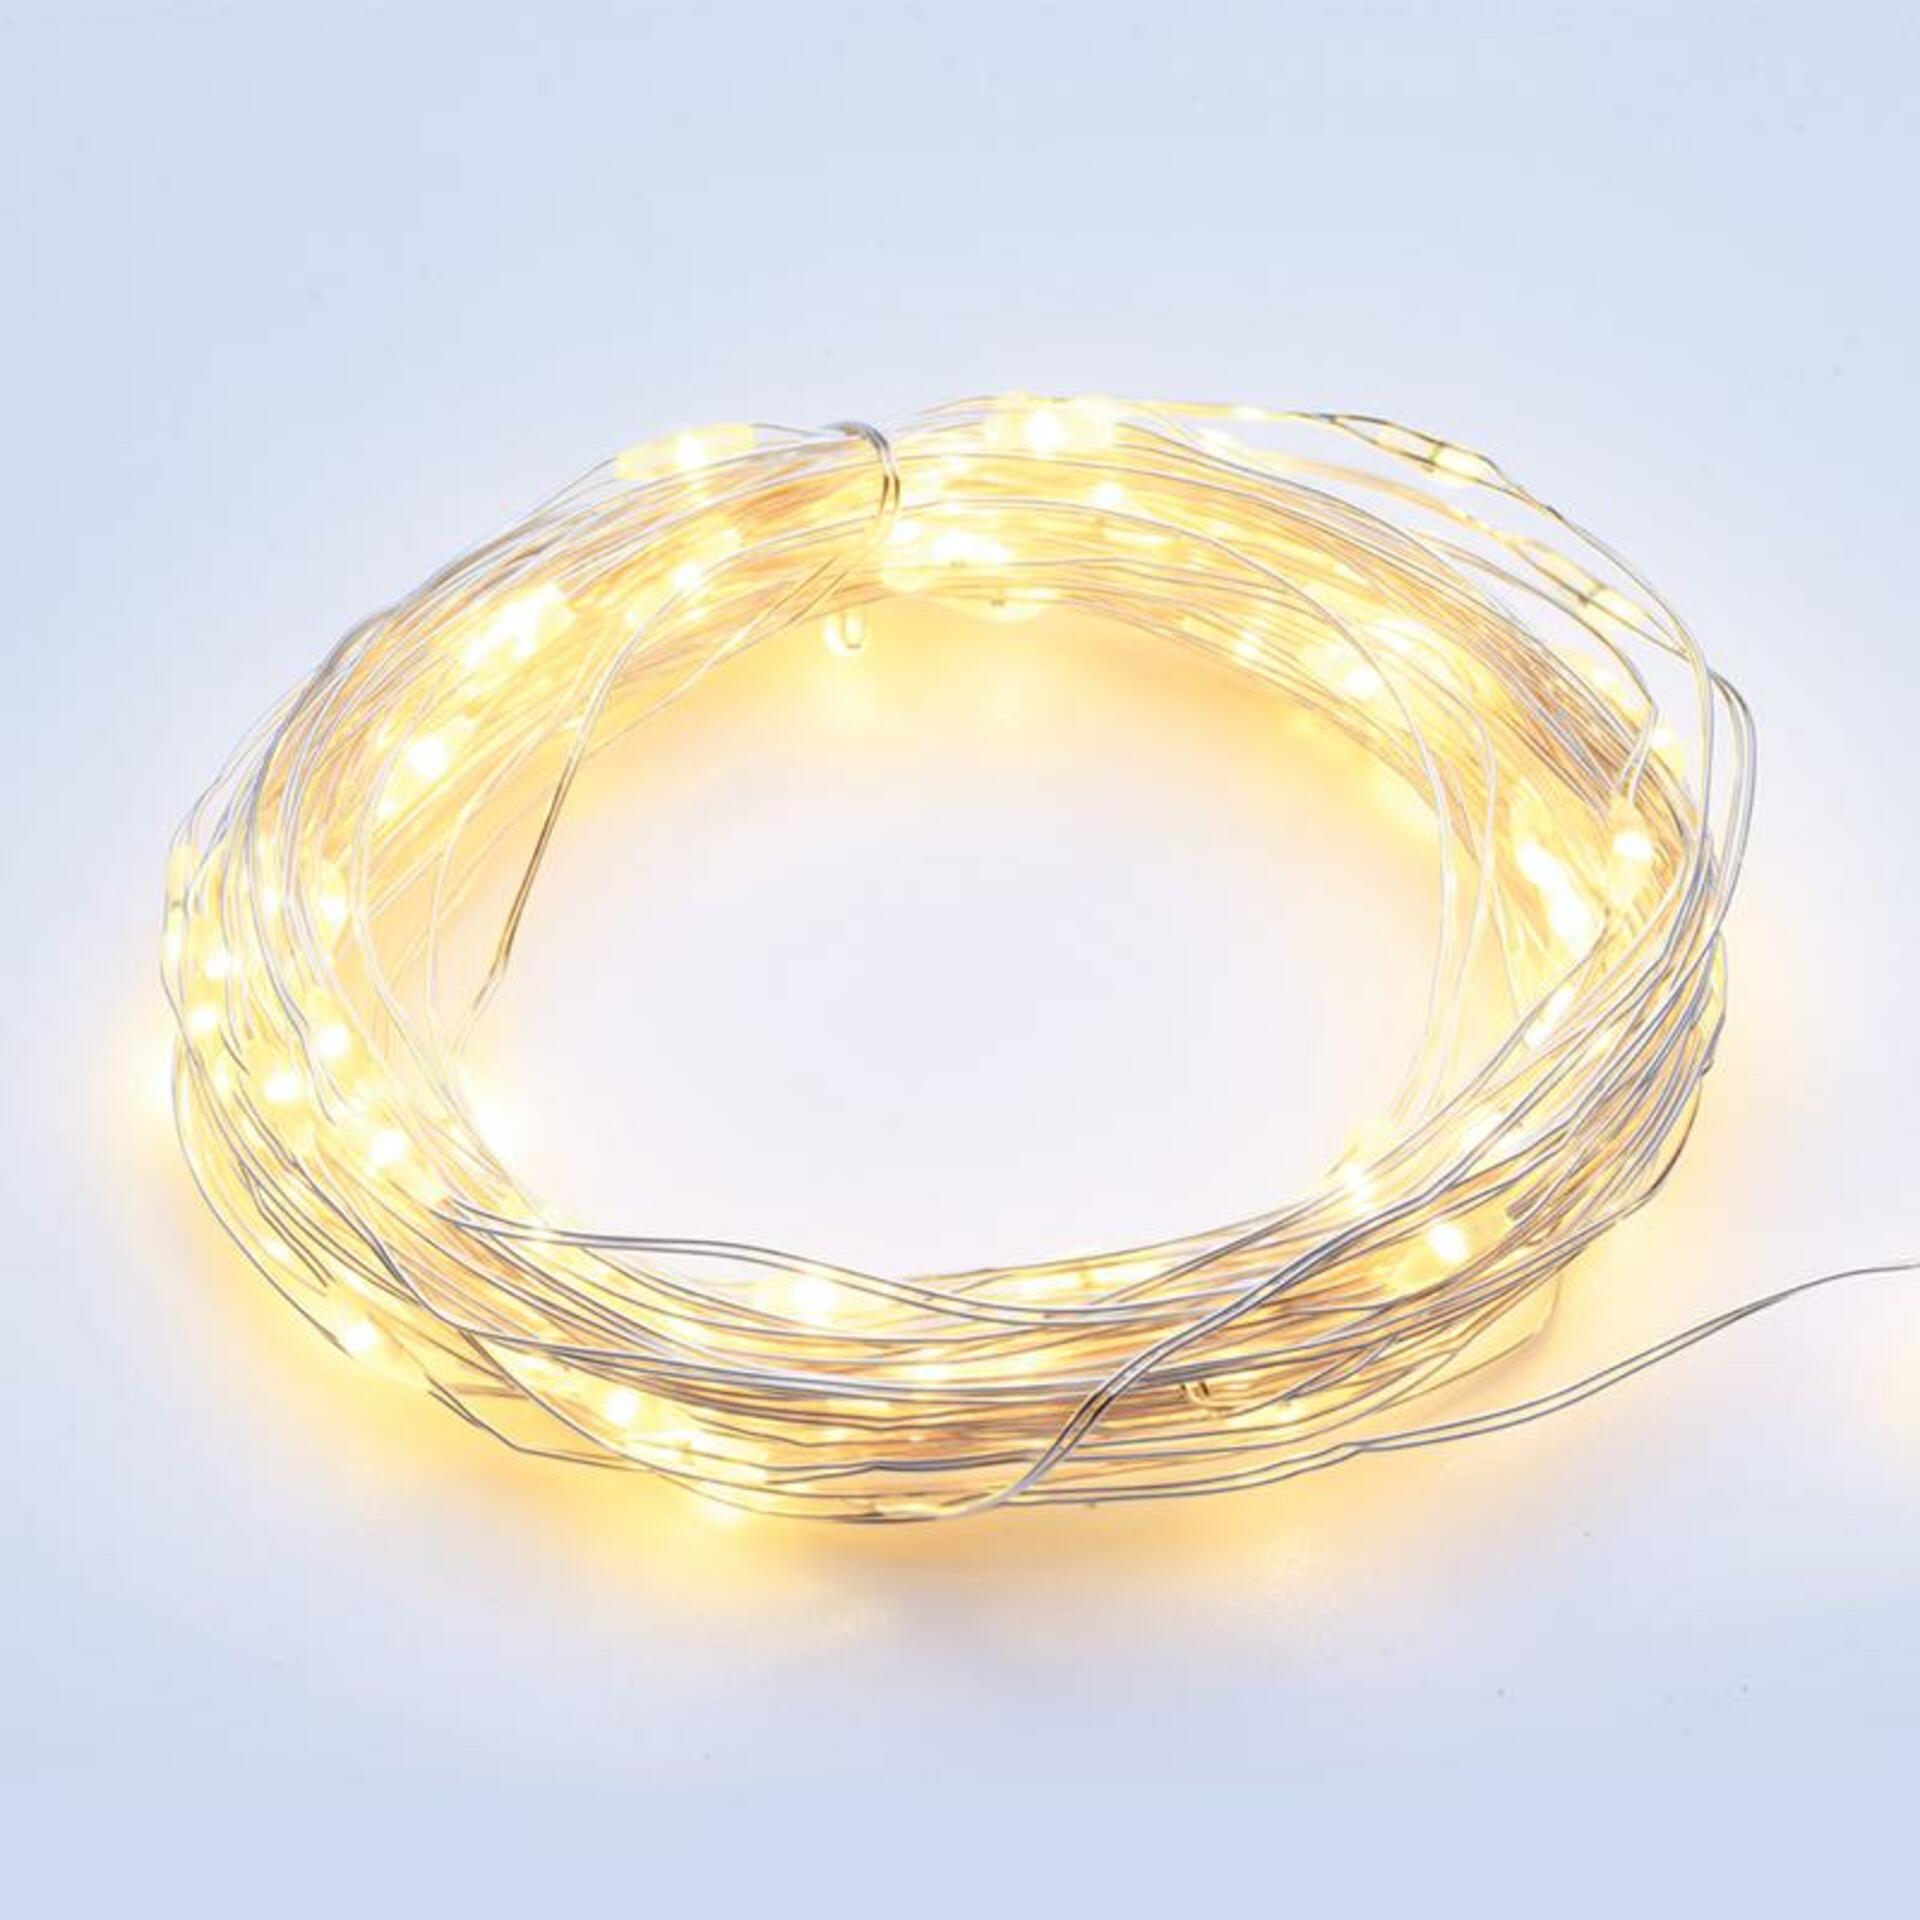 Levně ACA Lighting 100 LED dekorační řetěz WW stříbrný měďený kabel 220-240V + 8 funkcí IP44 10m+3m 1.8W X01100112